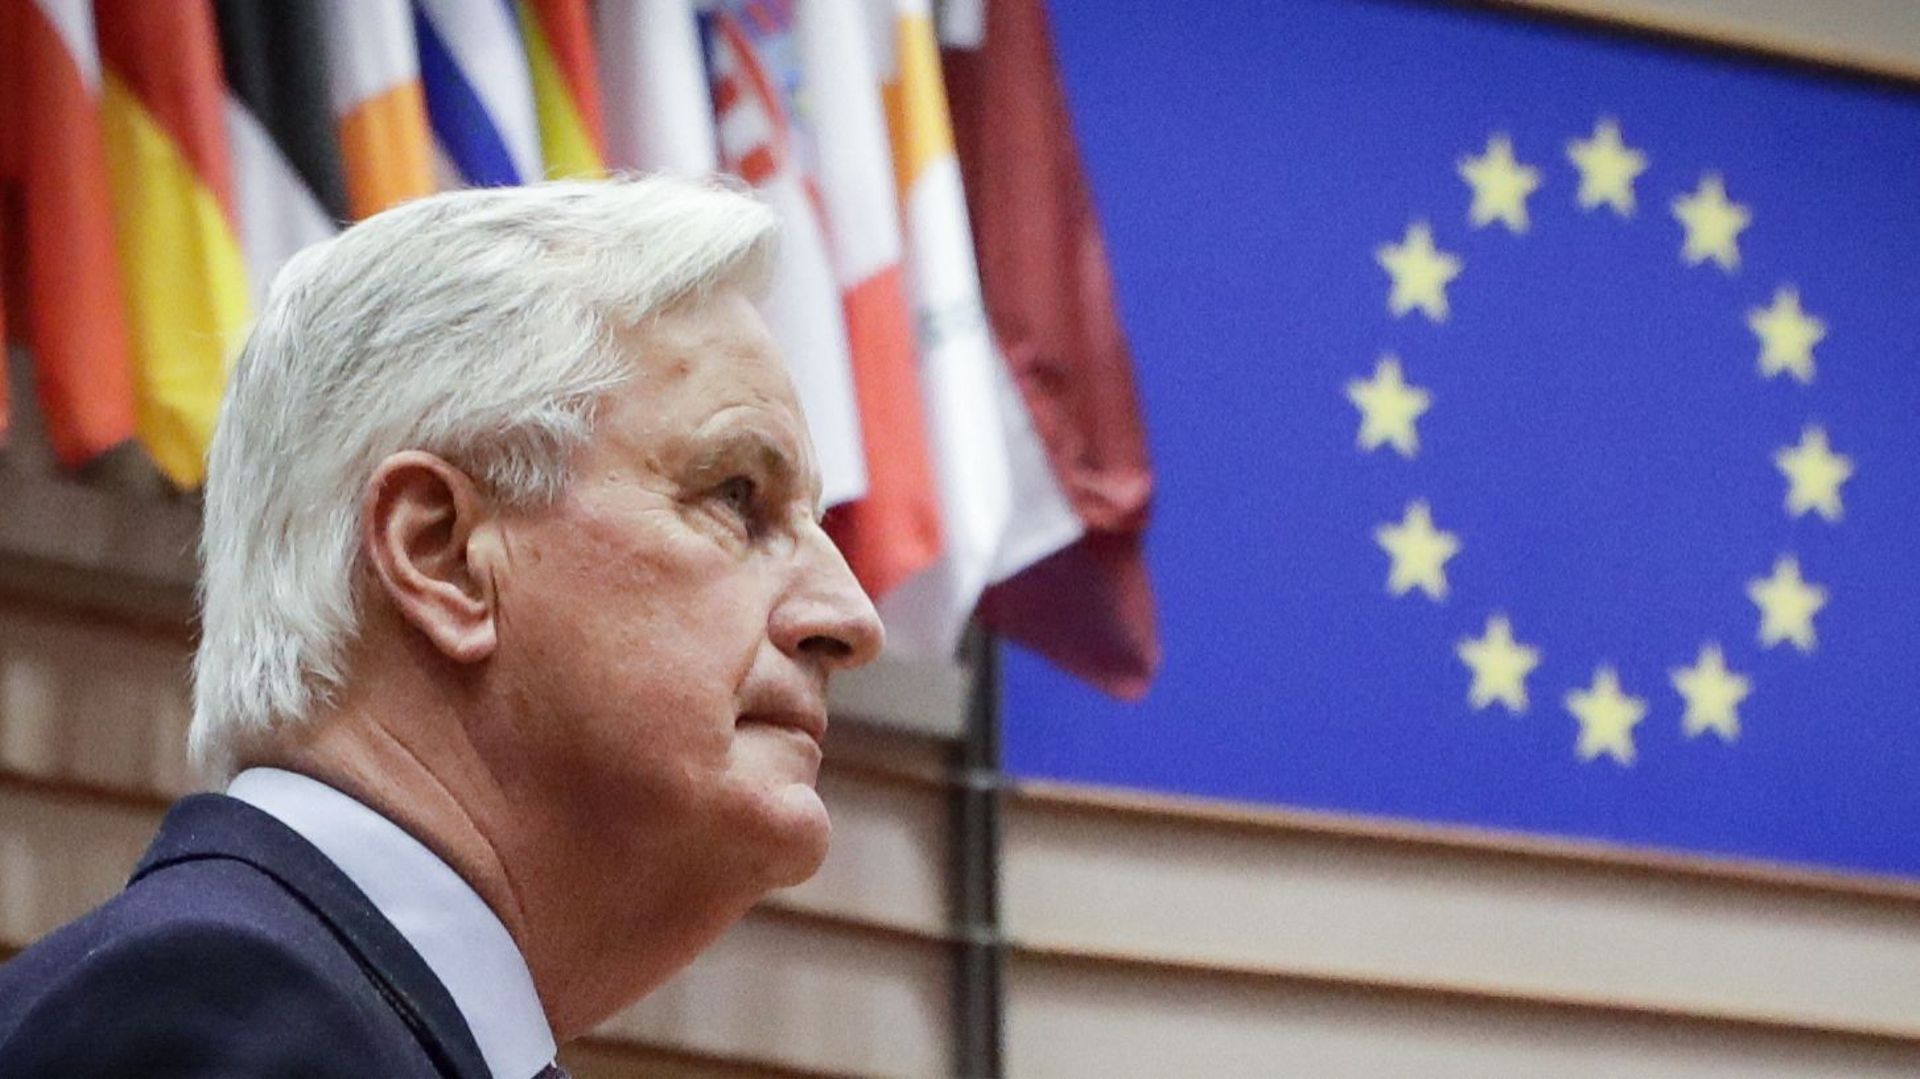 Michel Barnier, conseiller spécial de la présidente de la Commission européenne, en charge de mener les négociations avec le Royaume-Uni dans le cadre du Brexit.